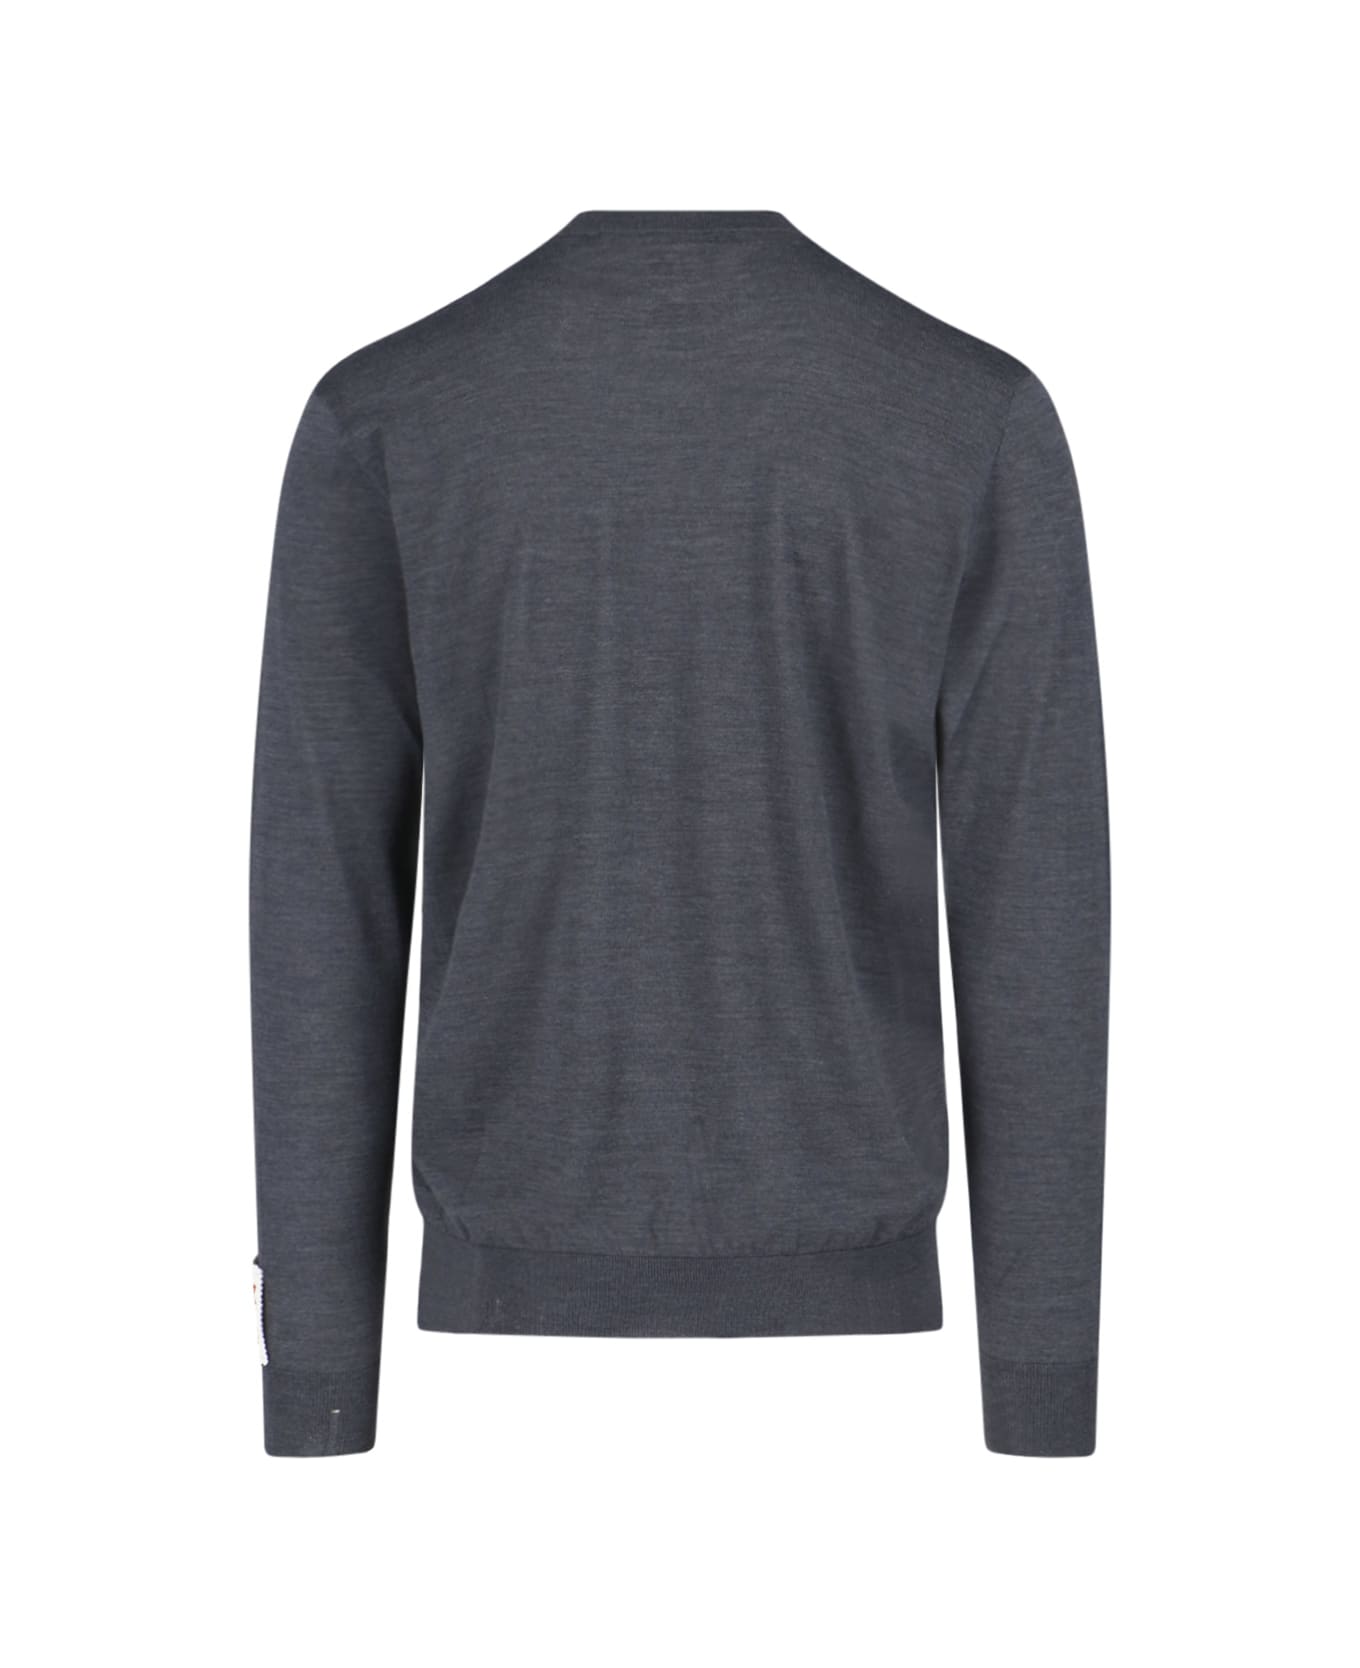 Golden Goose Basic Sweater - Gray